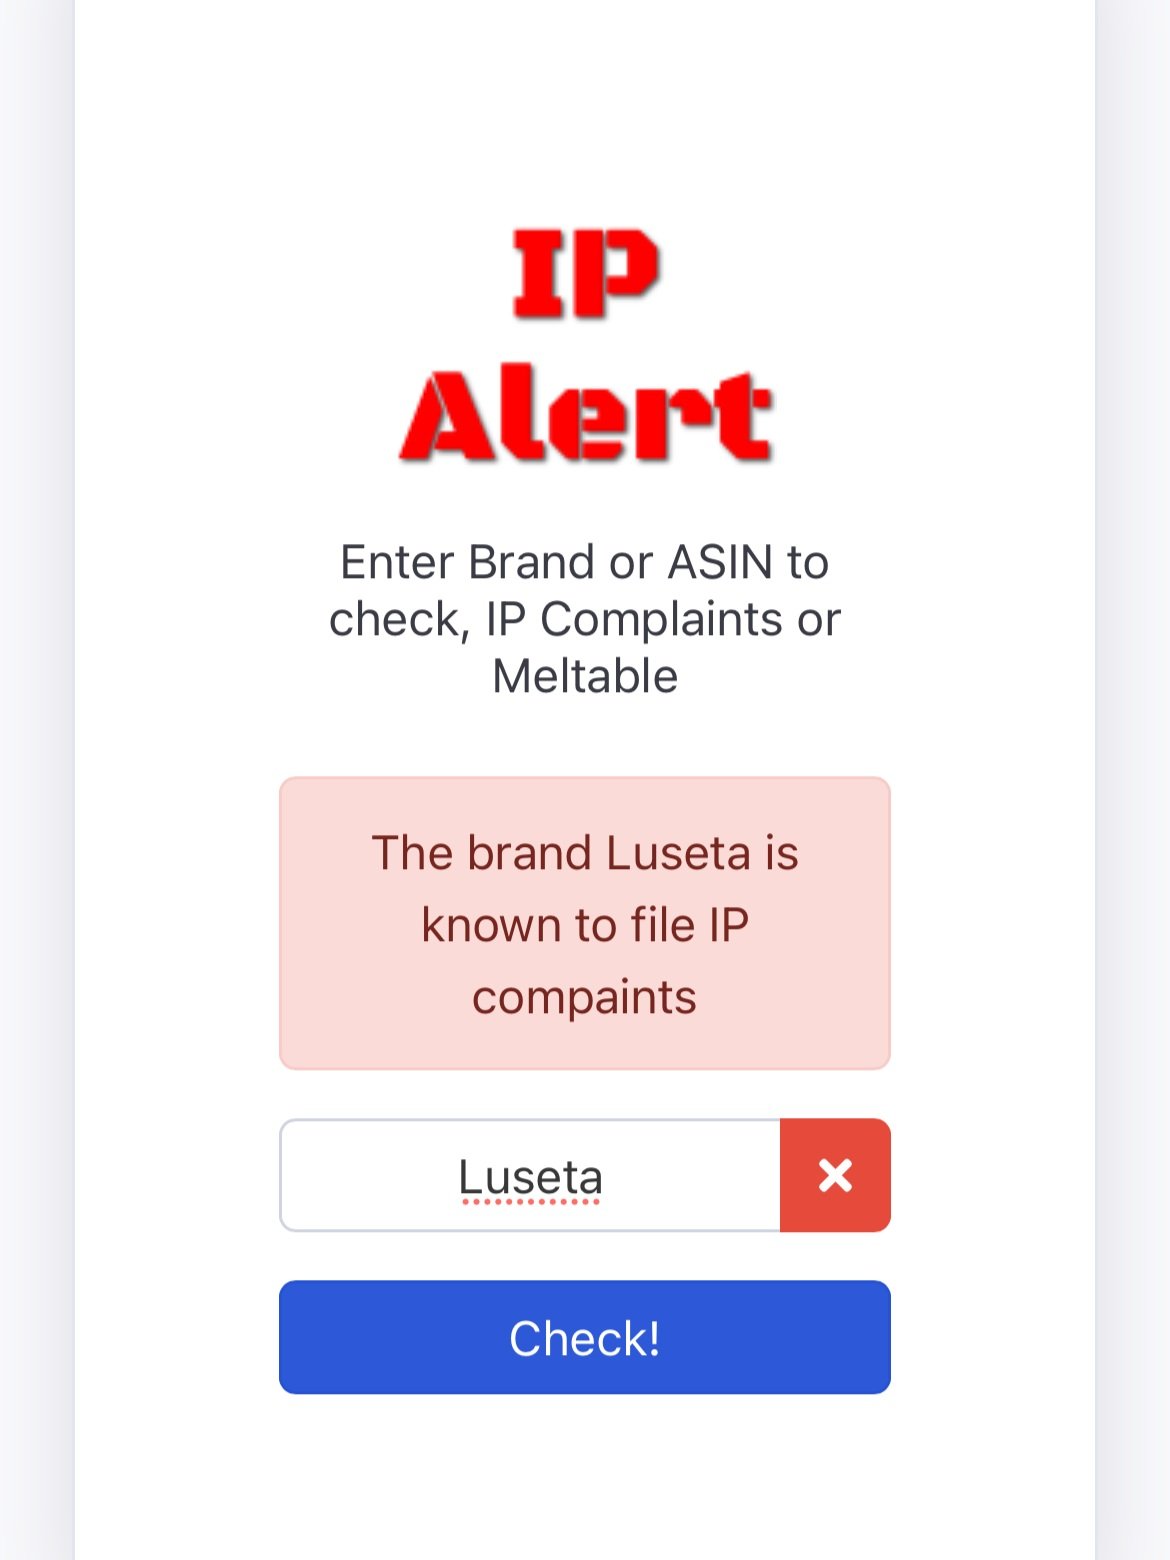 Red+IP+Alert.jpg